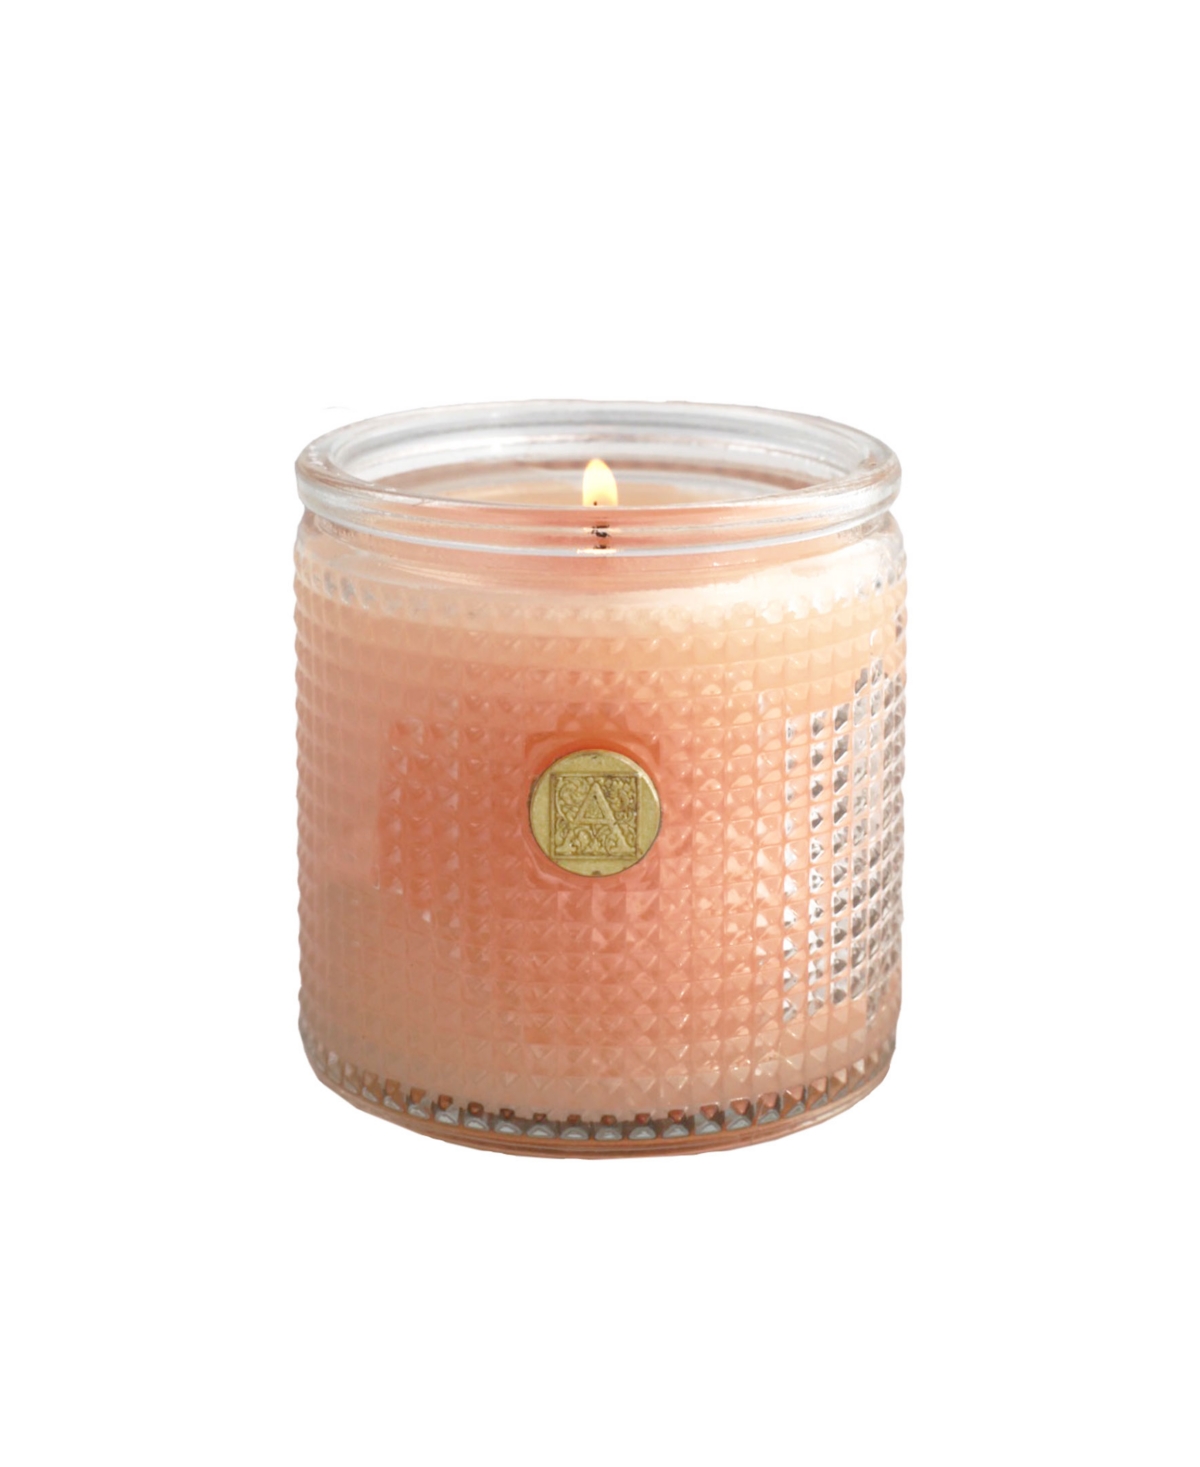 Elegant Essentials Tangerine Dreams Textured Candle, 6 oz - Light Orange